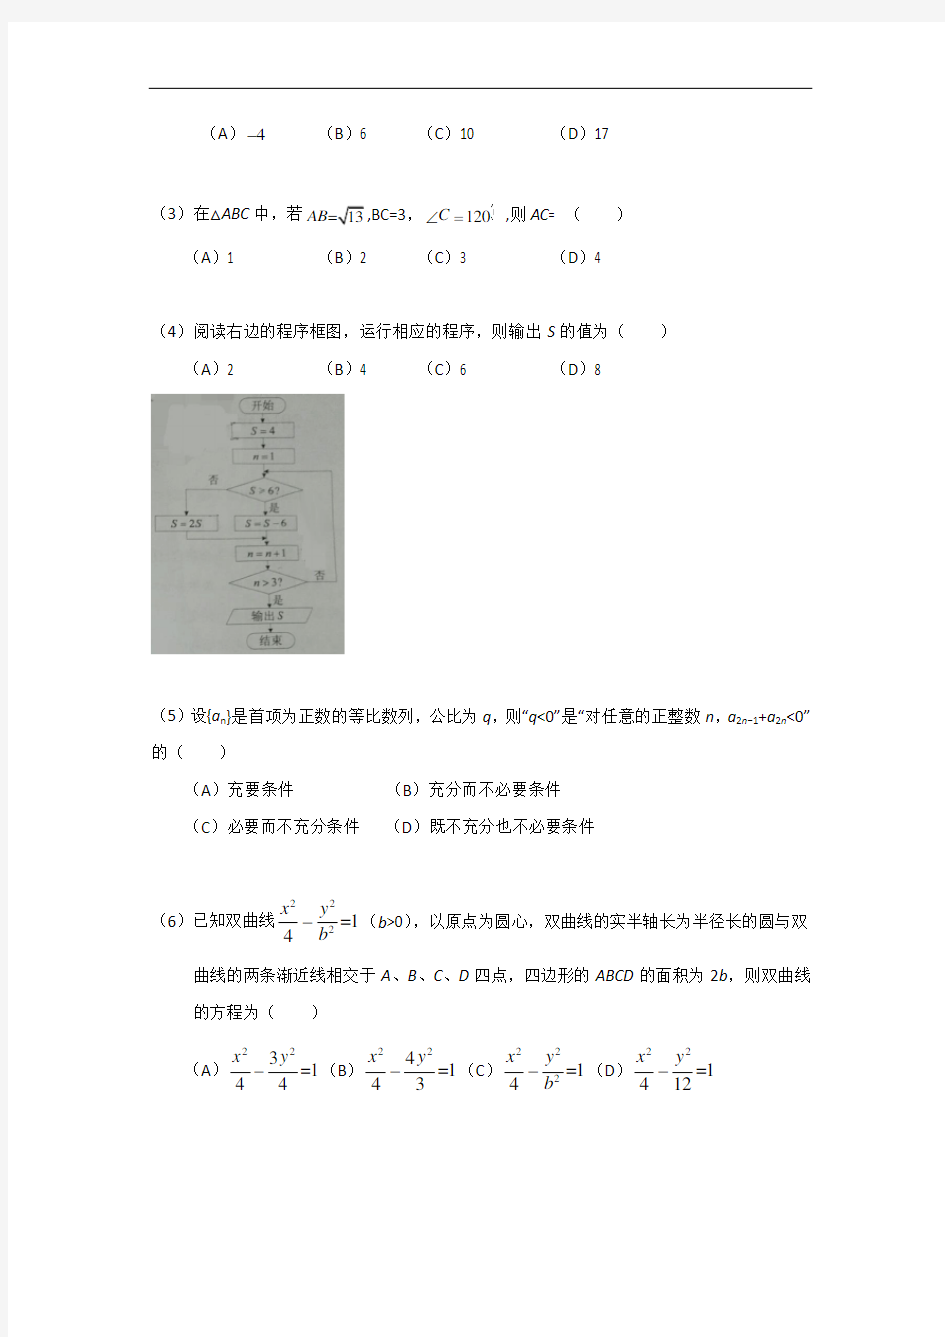 2016年高考真题——理科数学(天津卷)